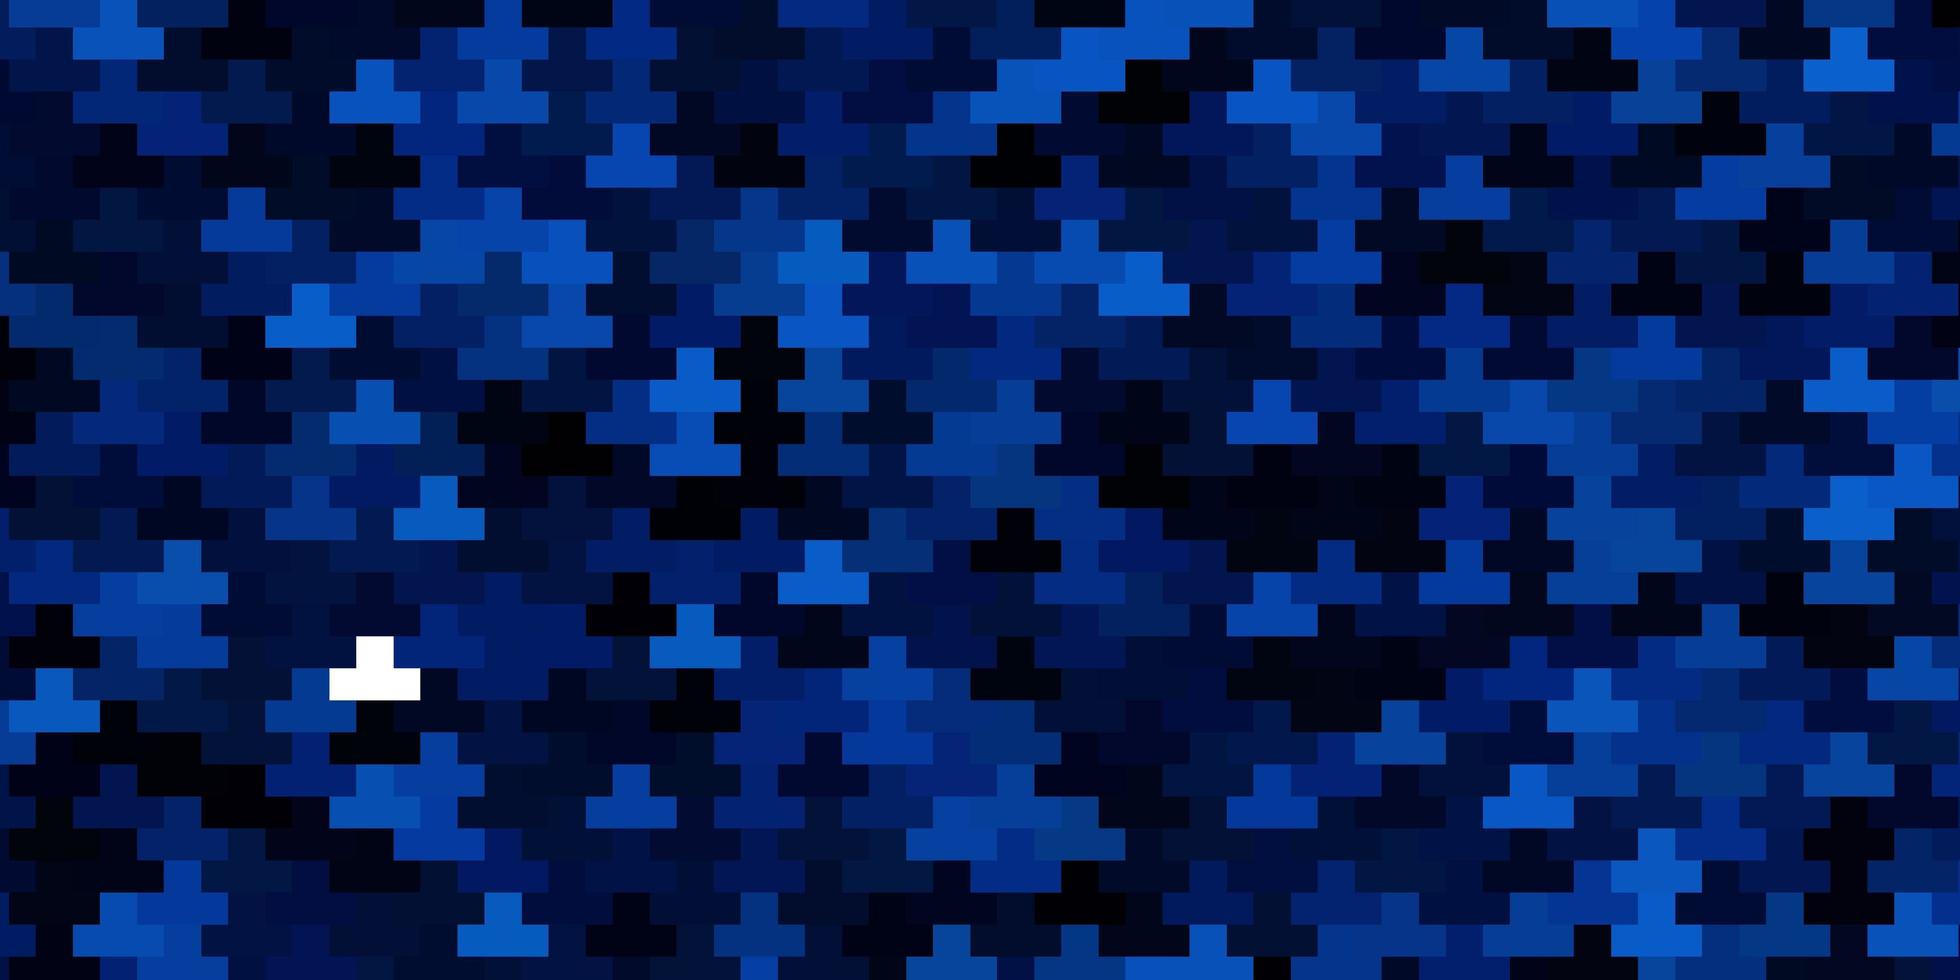 pano de fundo vector azul escuro com retângulos.